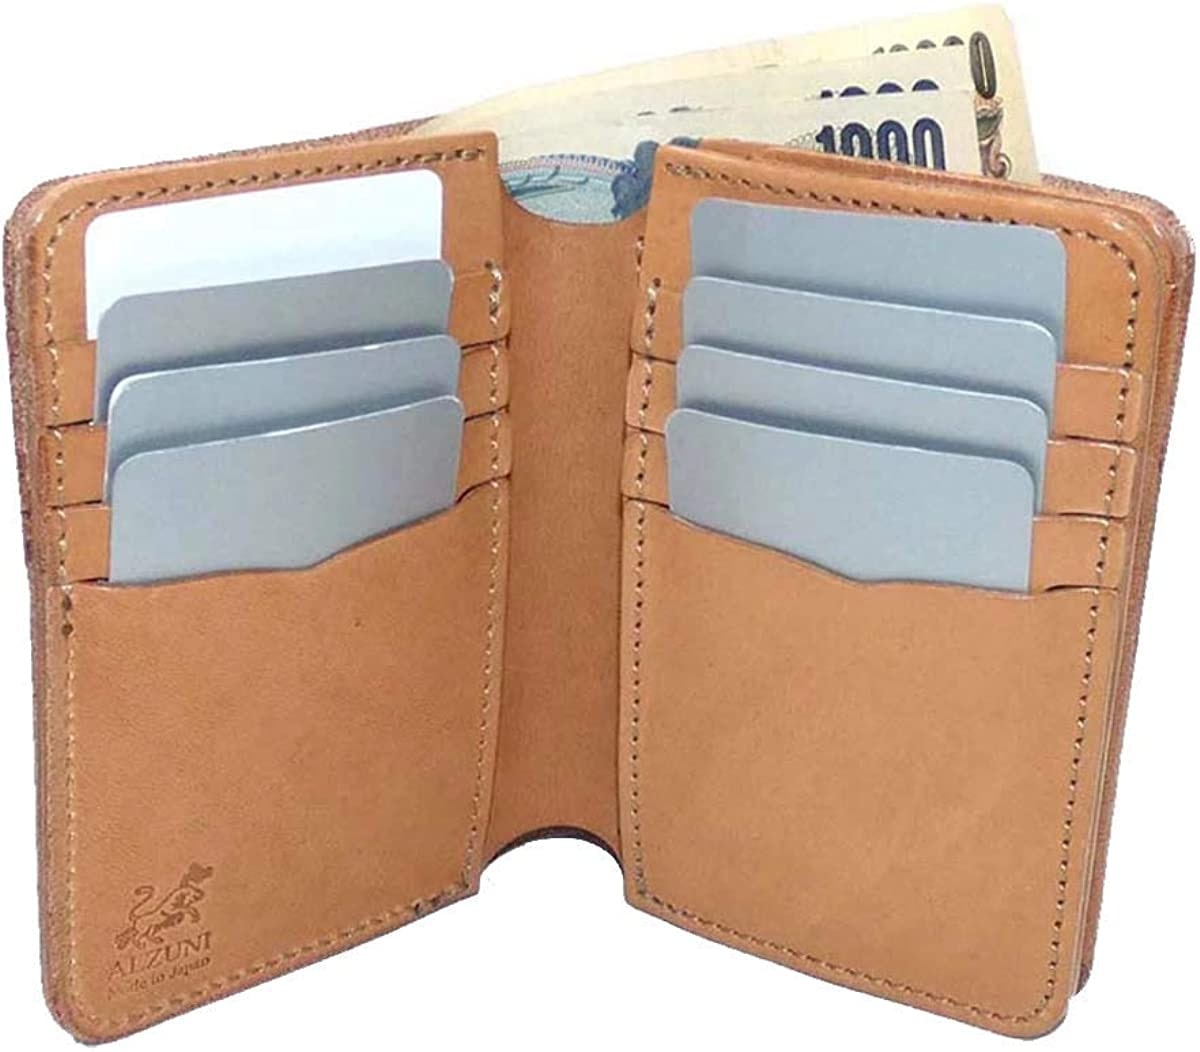 カードの視認性に優れた設計になっているハーフ財布の内側